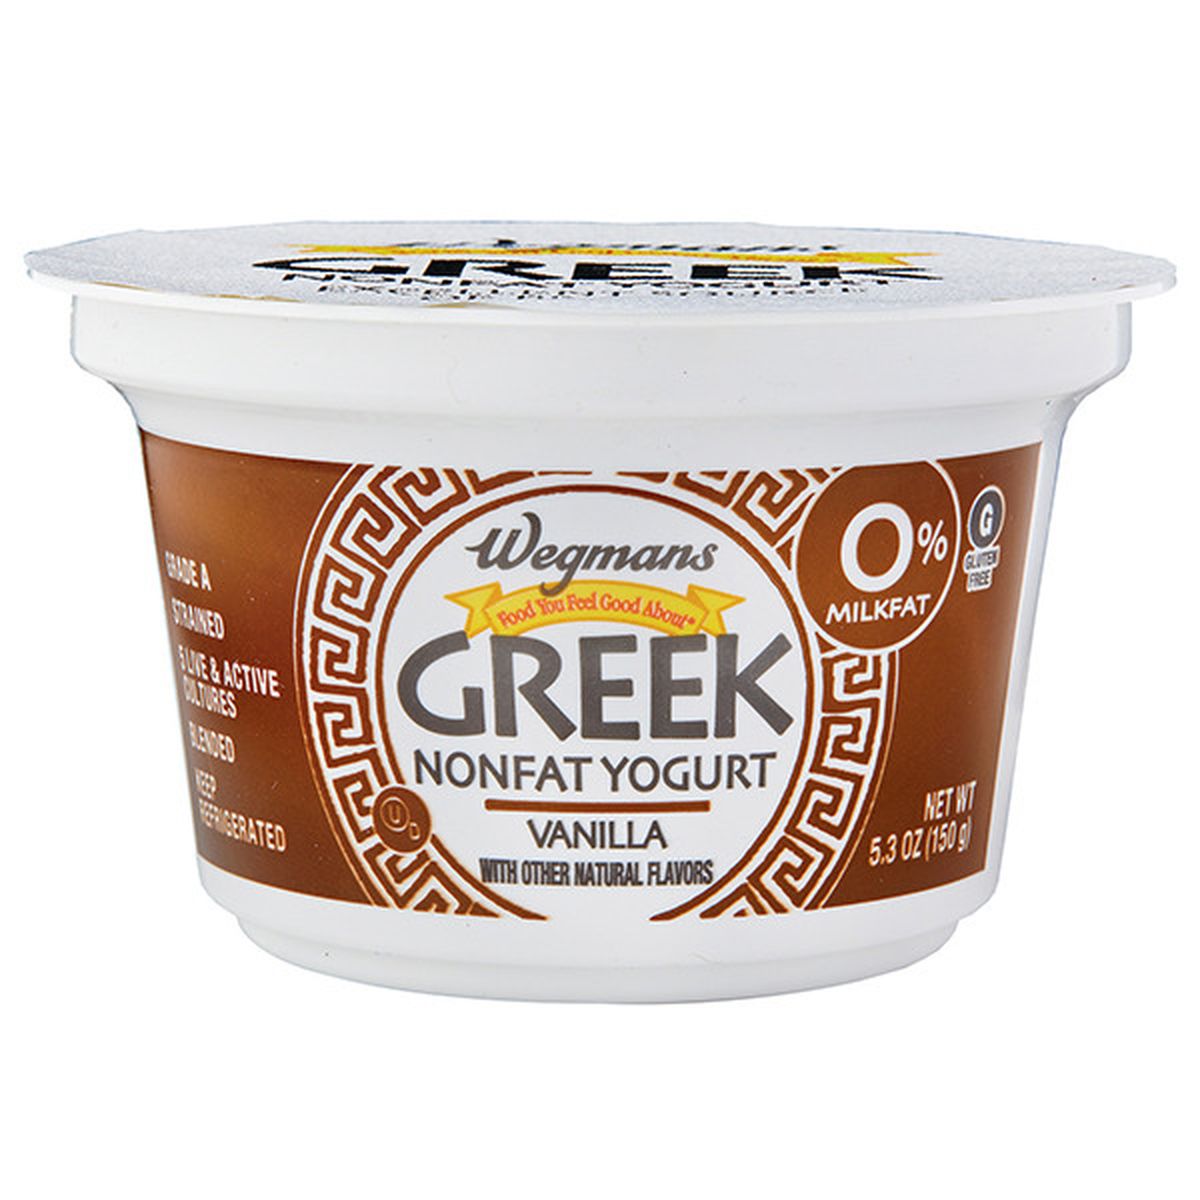 Calories in Wegmans Greek Vanilla Nonfat Yogurt